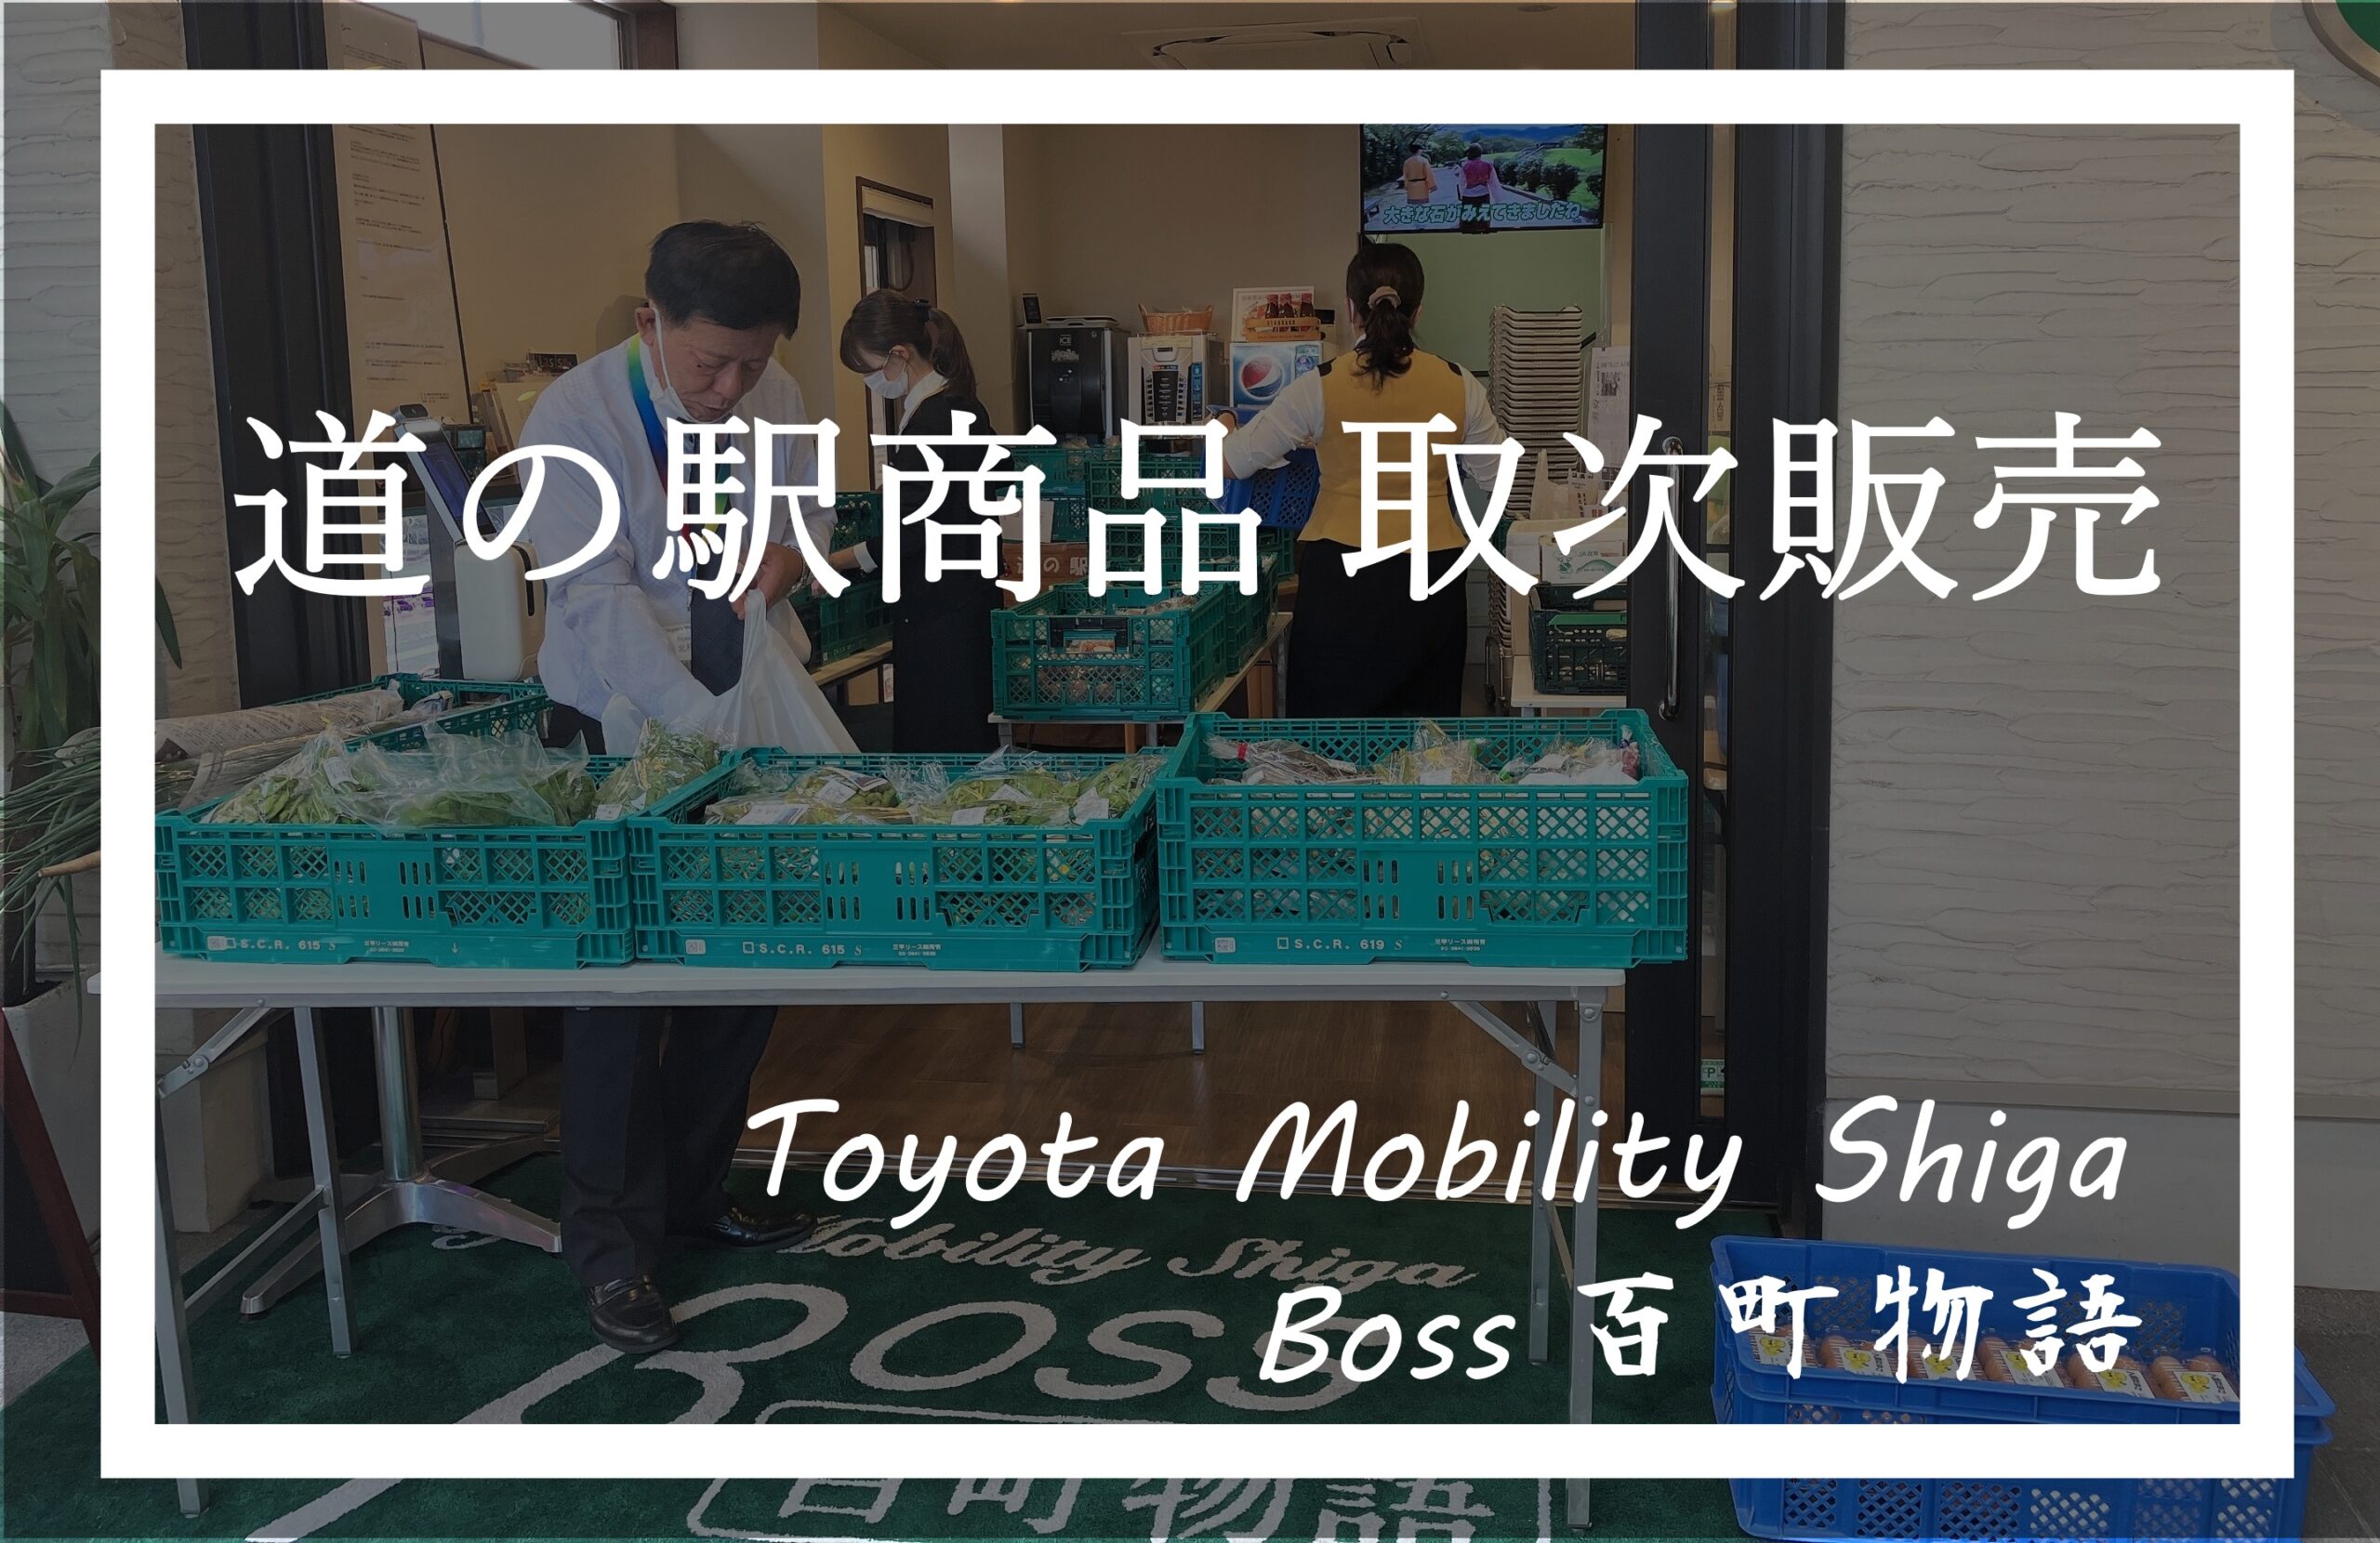 トヨタモビリティ滋賀Boss百町物語 道の駅商品取次販売